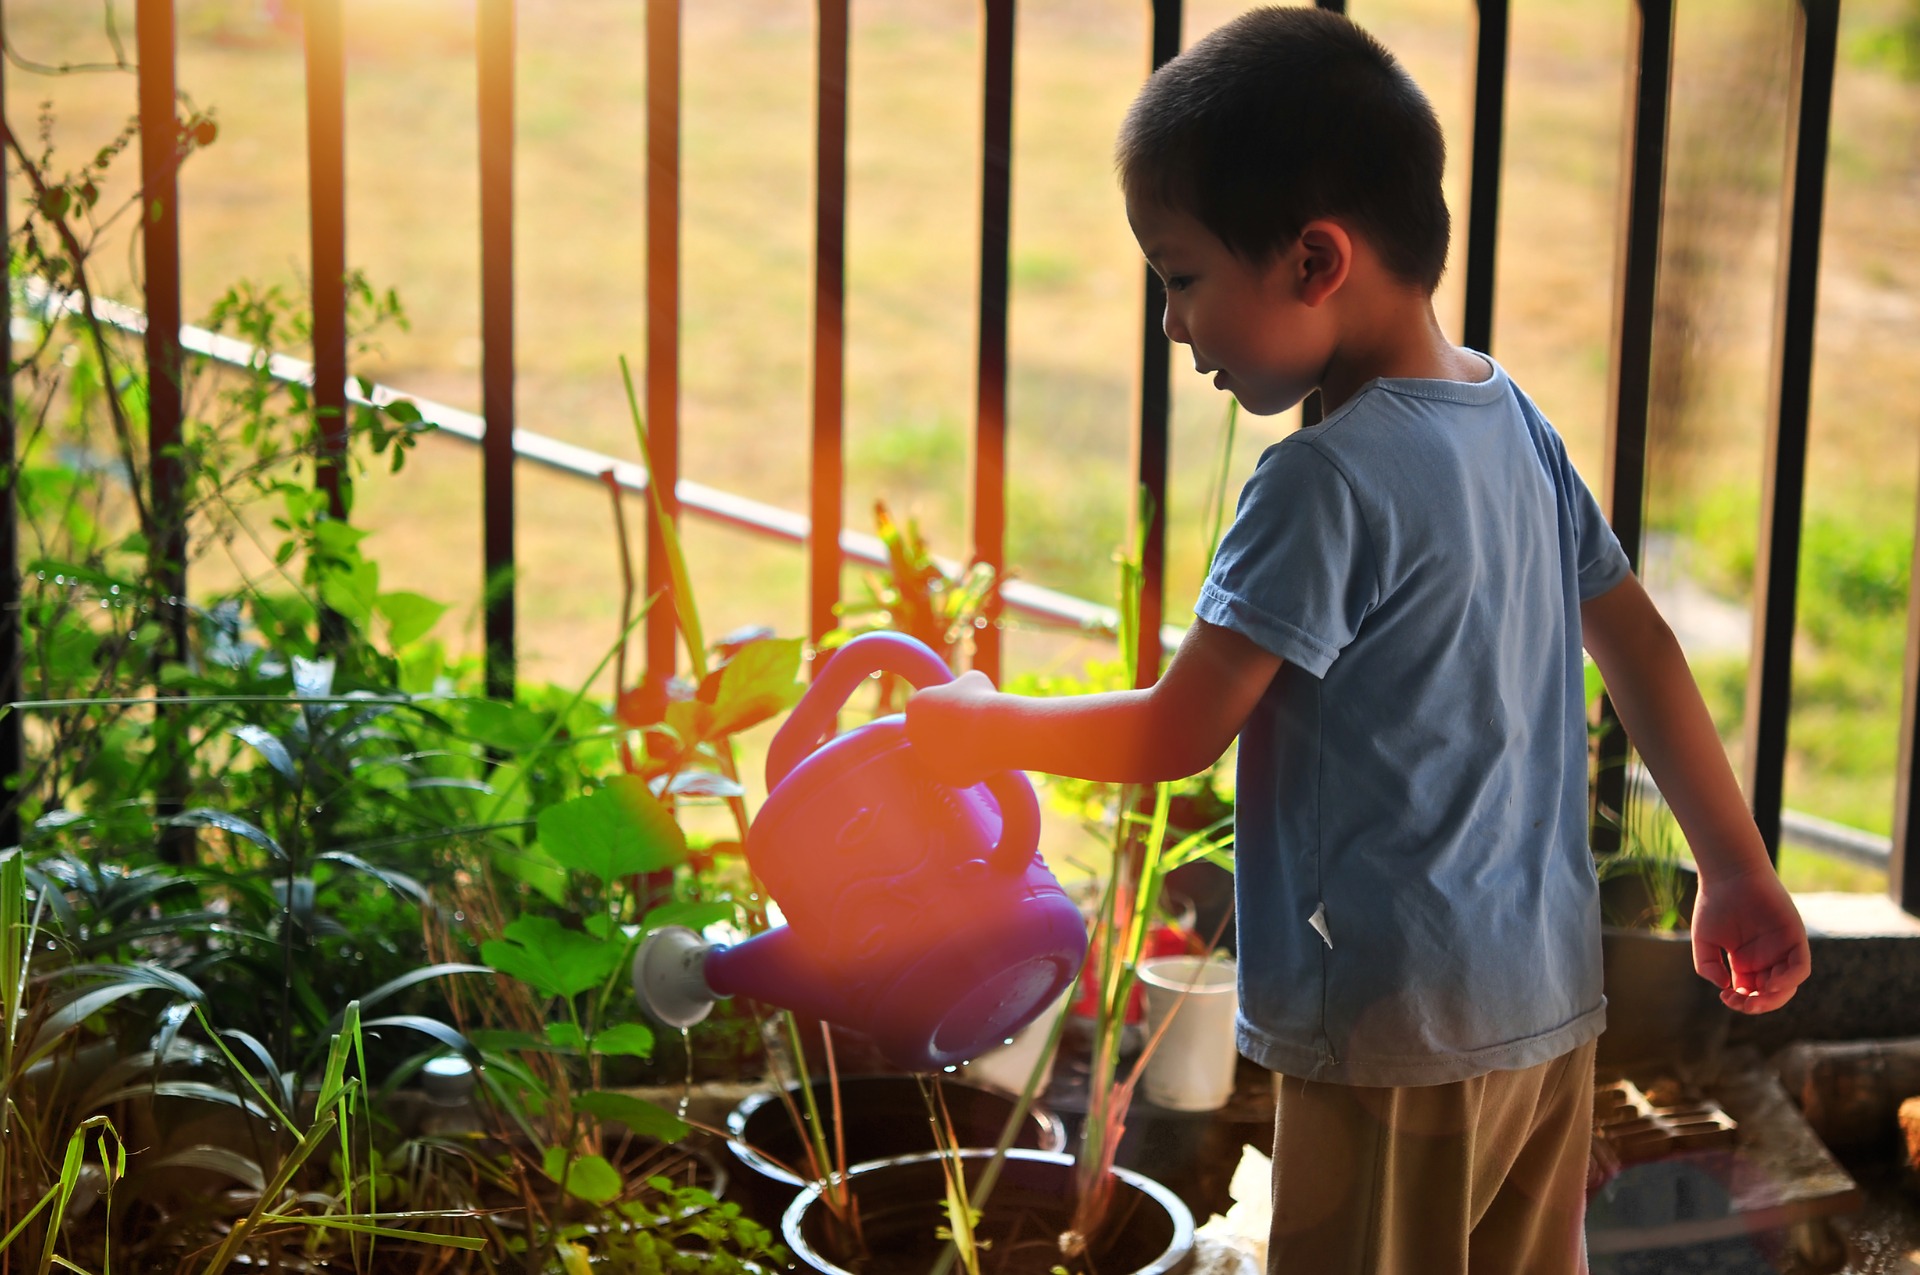 regadera para niños novatos en jardinería